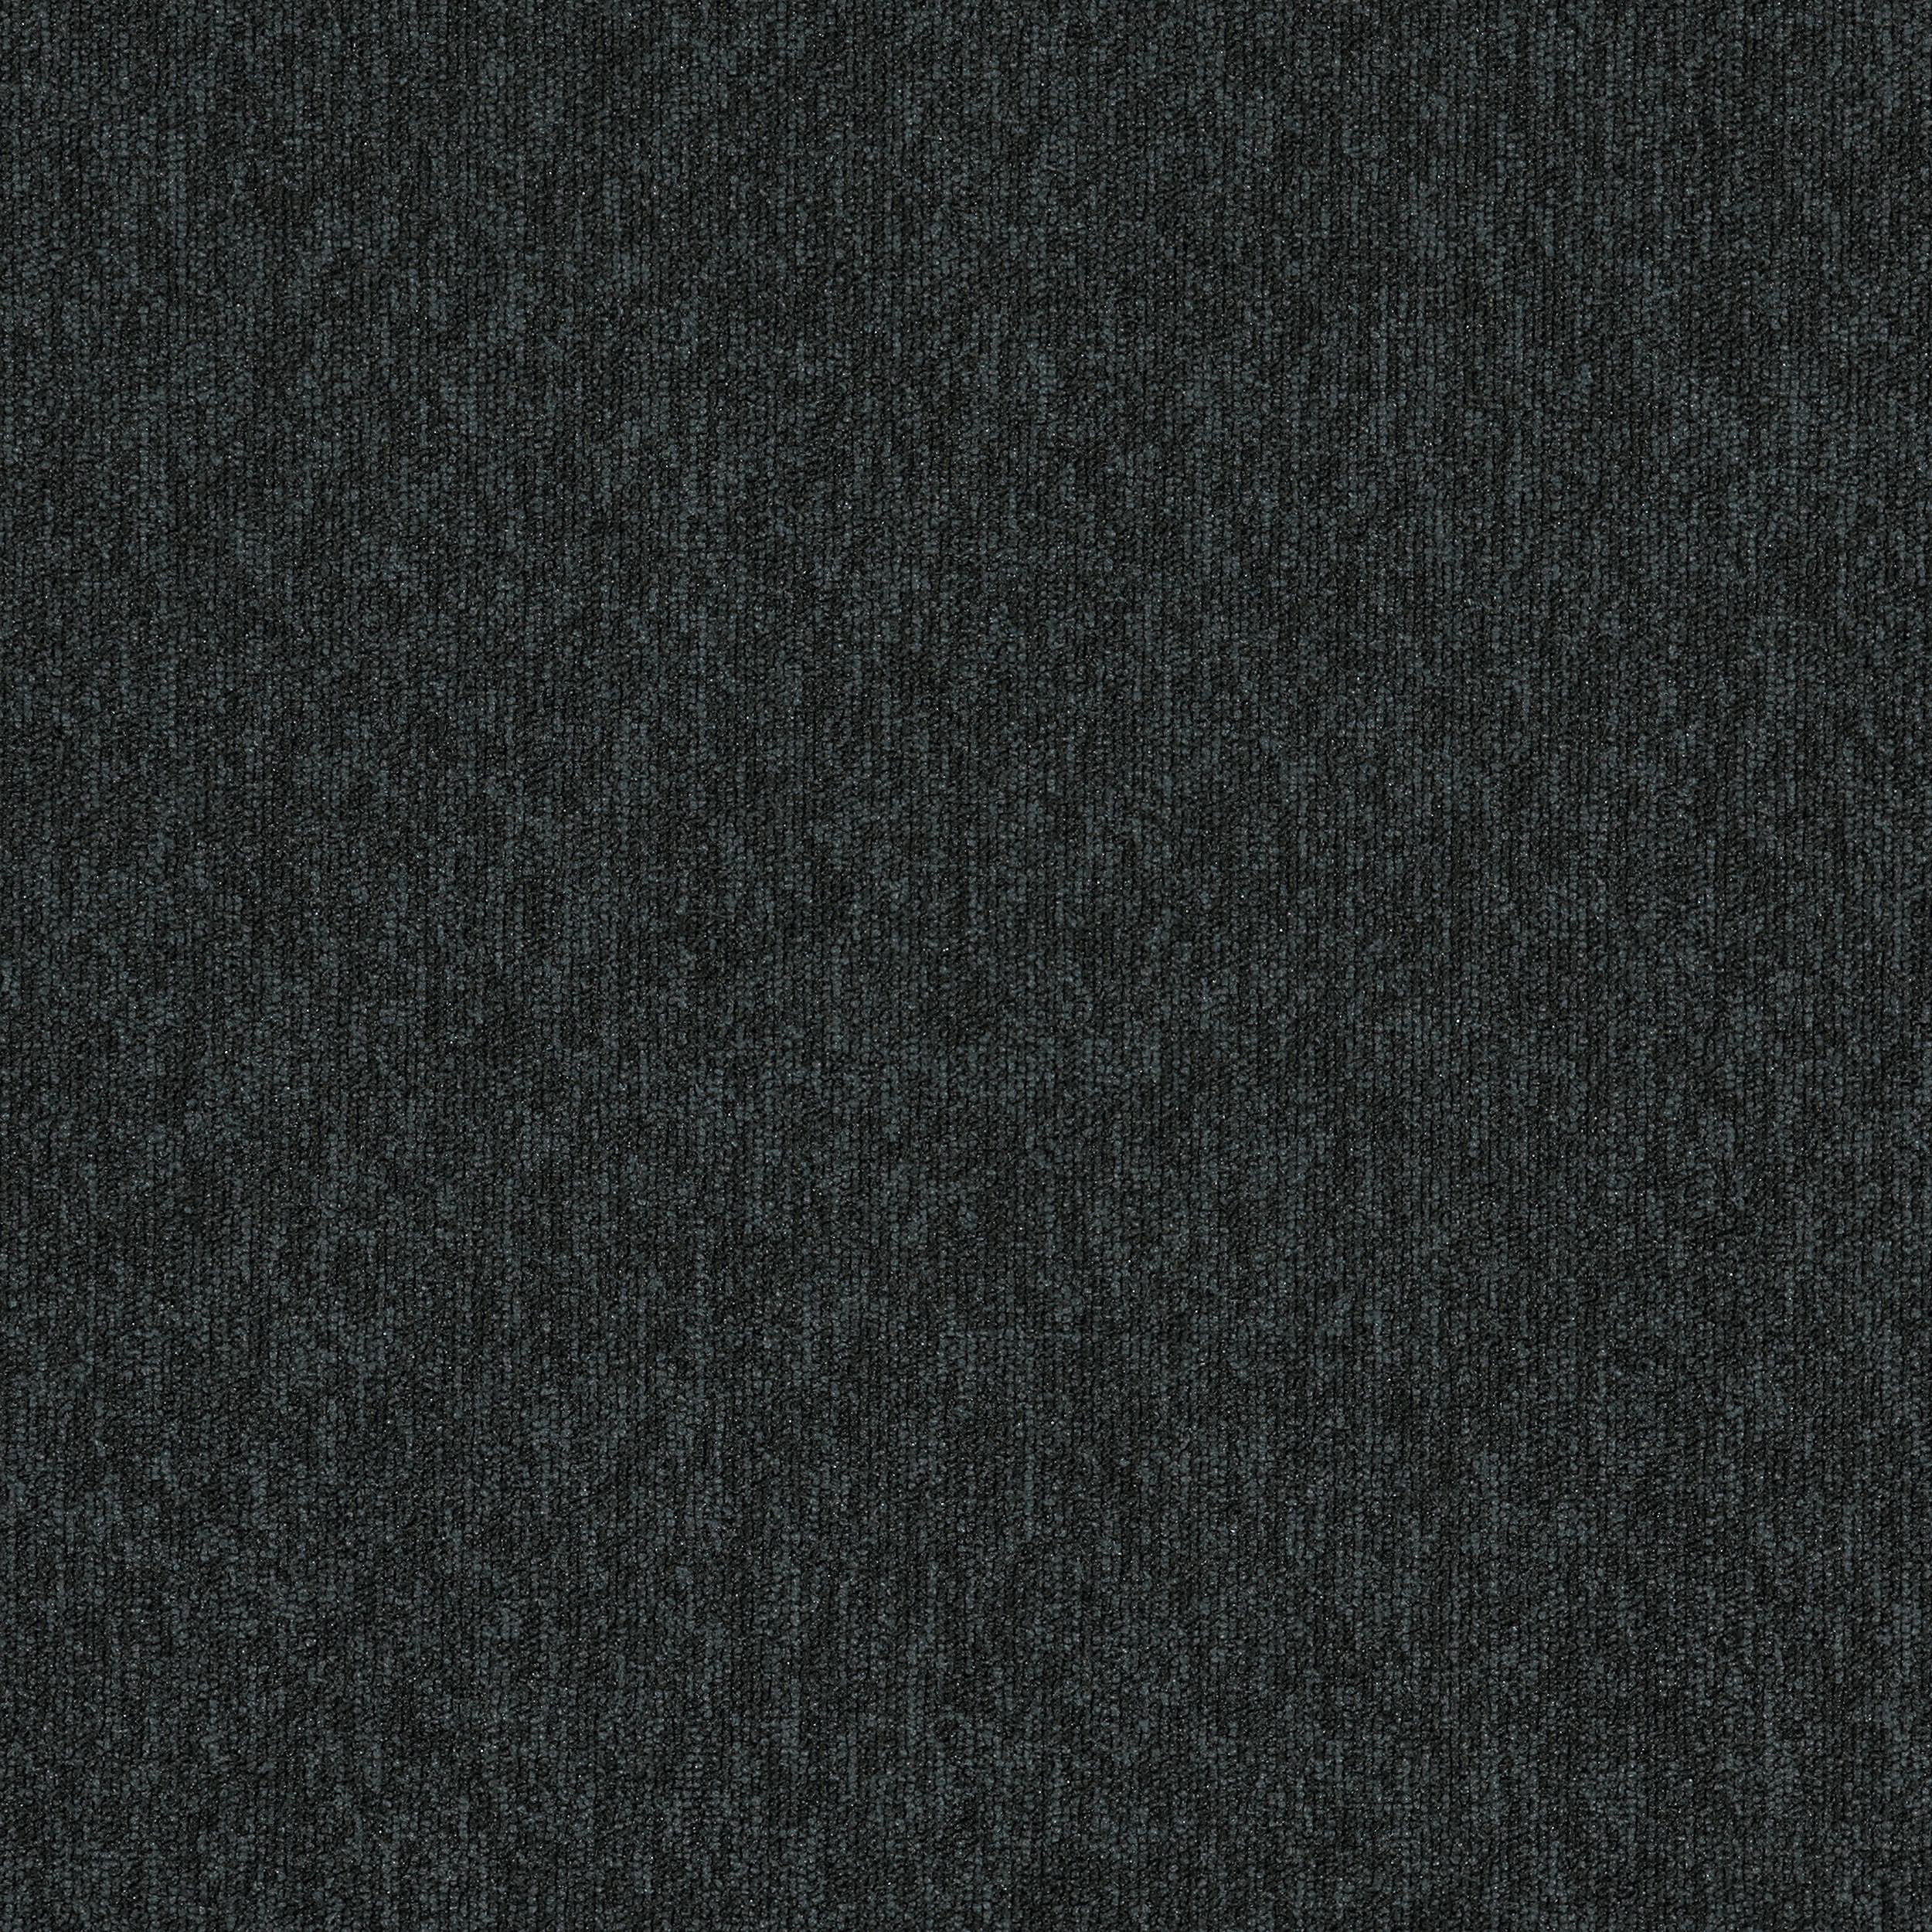 New Horizons II Carpet Tile In Carbon afbeeldingnummer 3